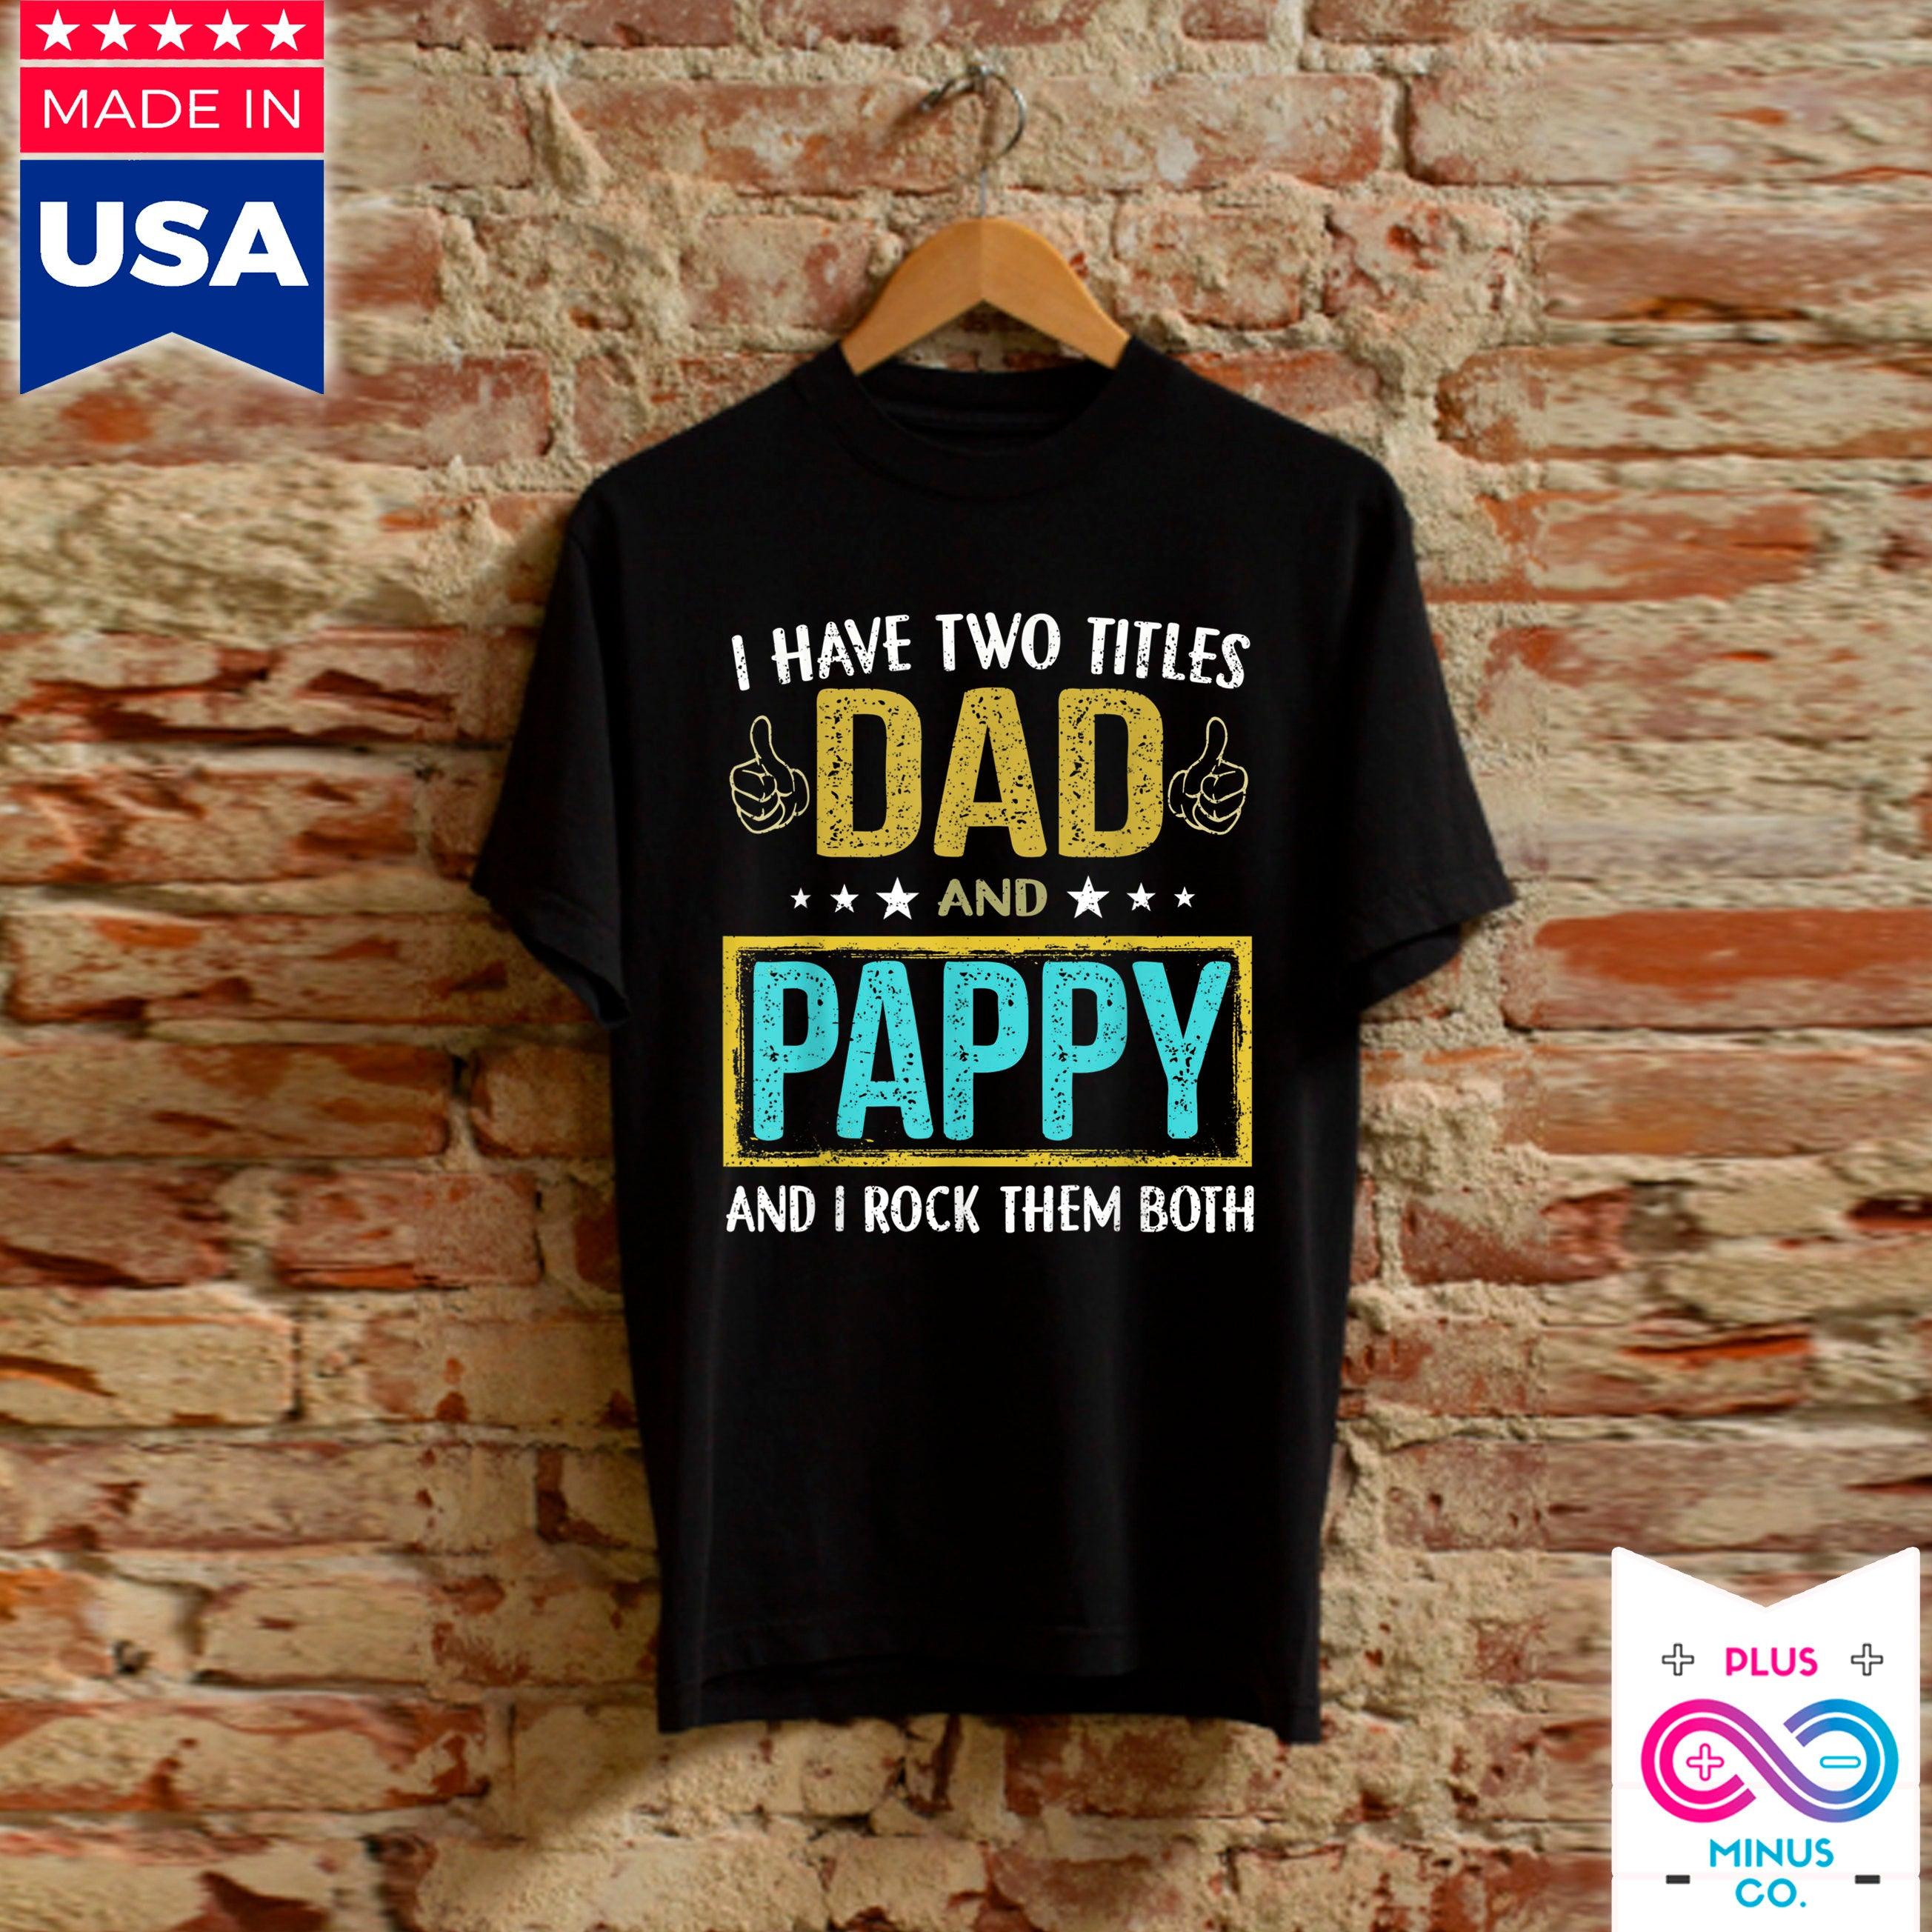 Men'S I Have Two Titles Dad And Pappy - Regali per il padre T-shirt, regali da figlia a papà, regalo per la festa del papà, regali da figlio a papà - plusminusco.com